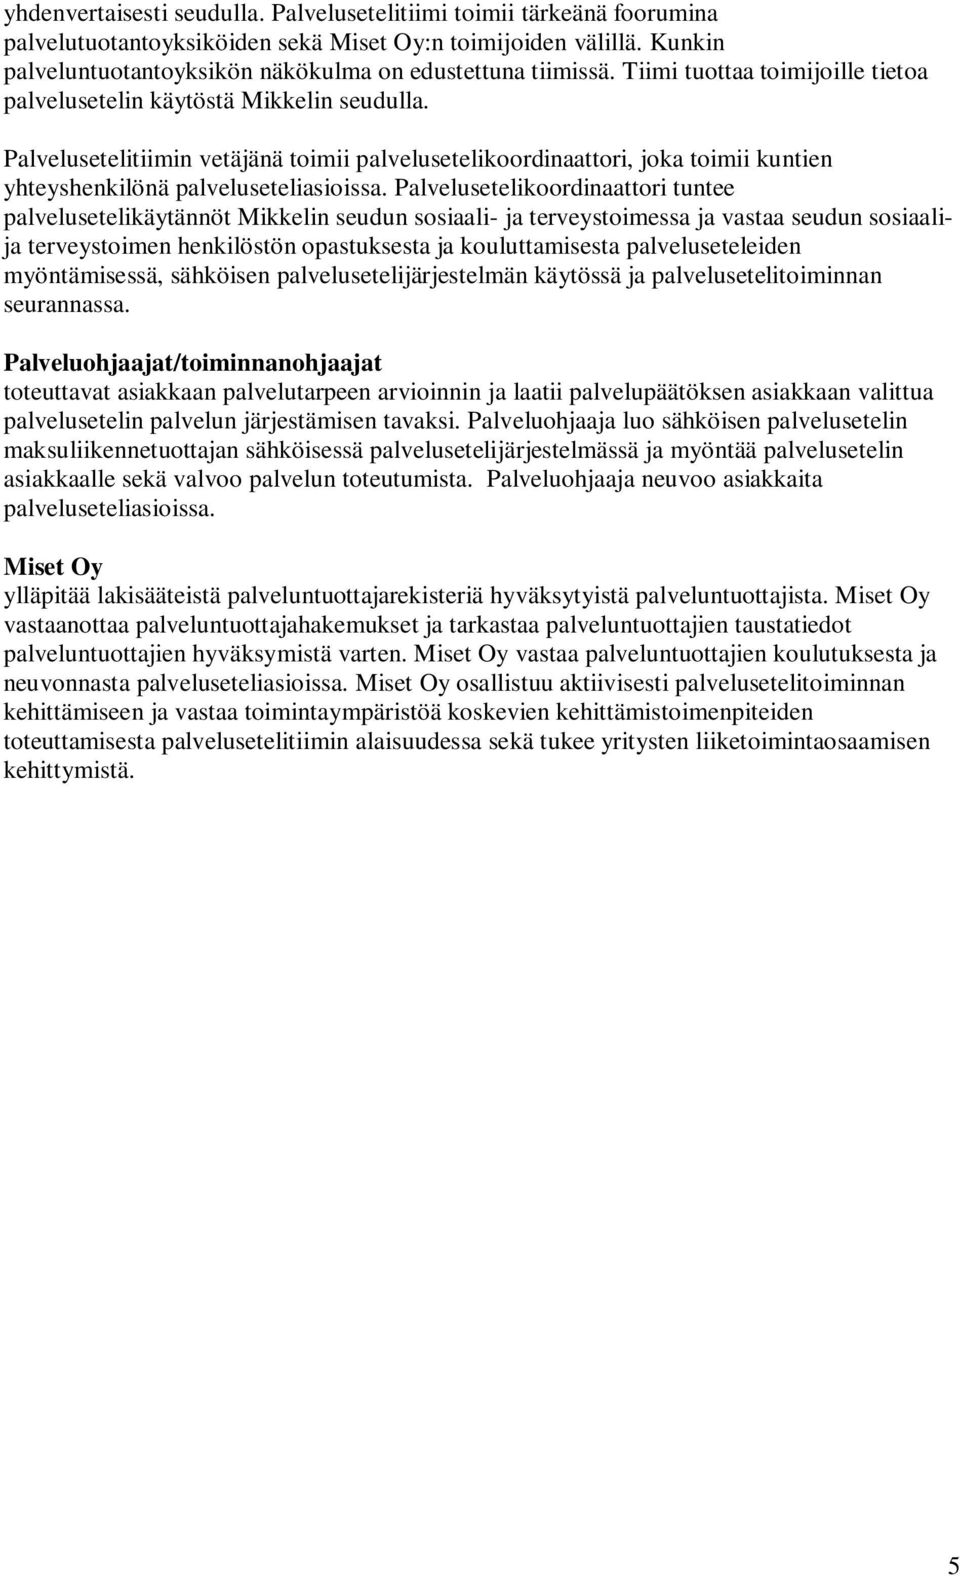 Palvelusetelikoordinaattori tuntee palvelusetelikäytännöt Mikkelin seudun sosiaali- ja terveystoimessa ja vastaa seudun sosiaalija terveystoimen henkilöstön opastuksesta ja kouluttamisesta